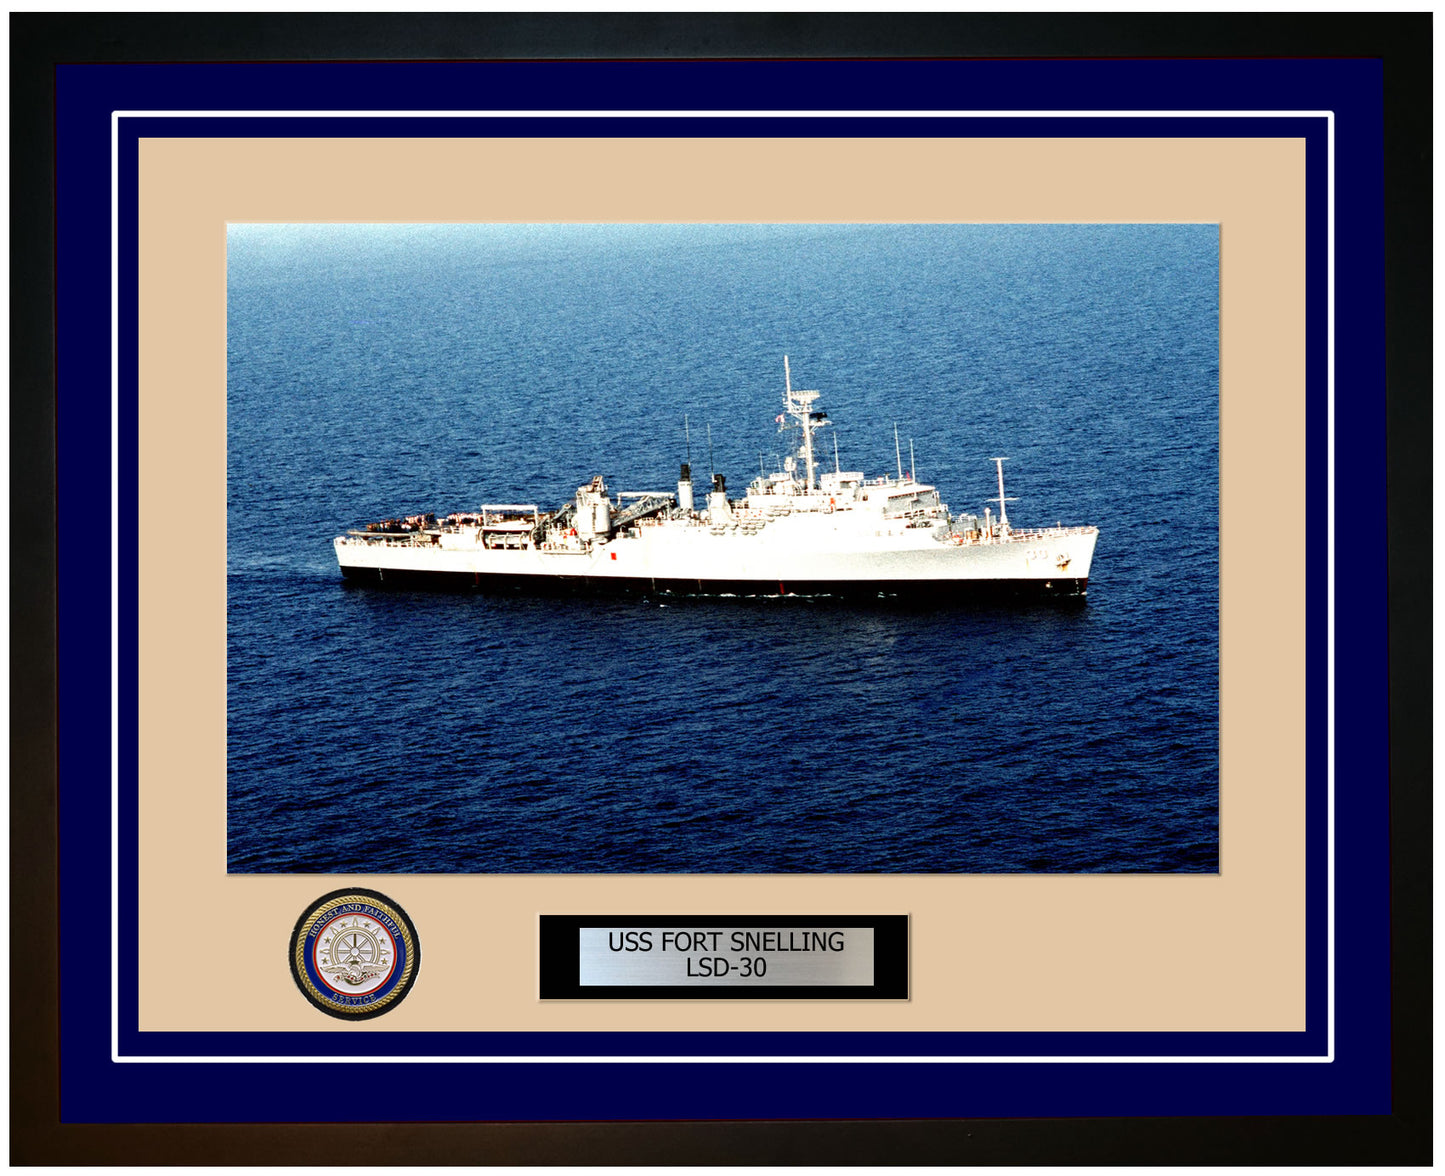 USS Fort Snelling LSD-30 Framed Navy Ship Photo Blue